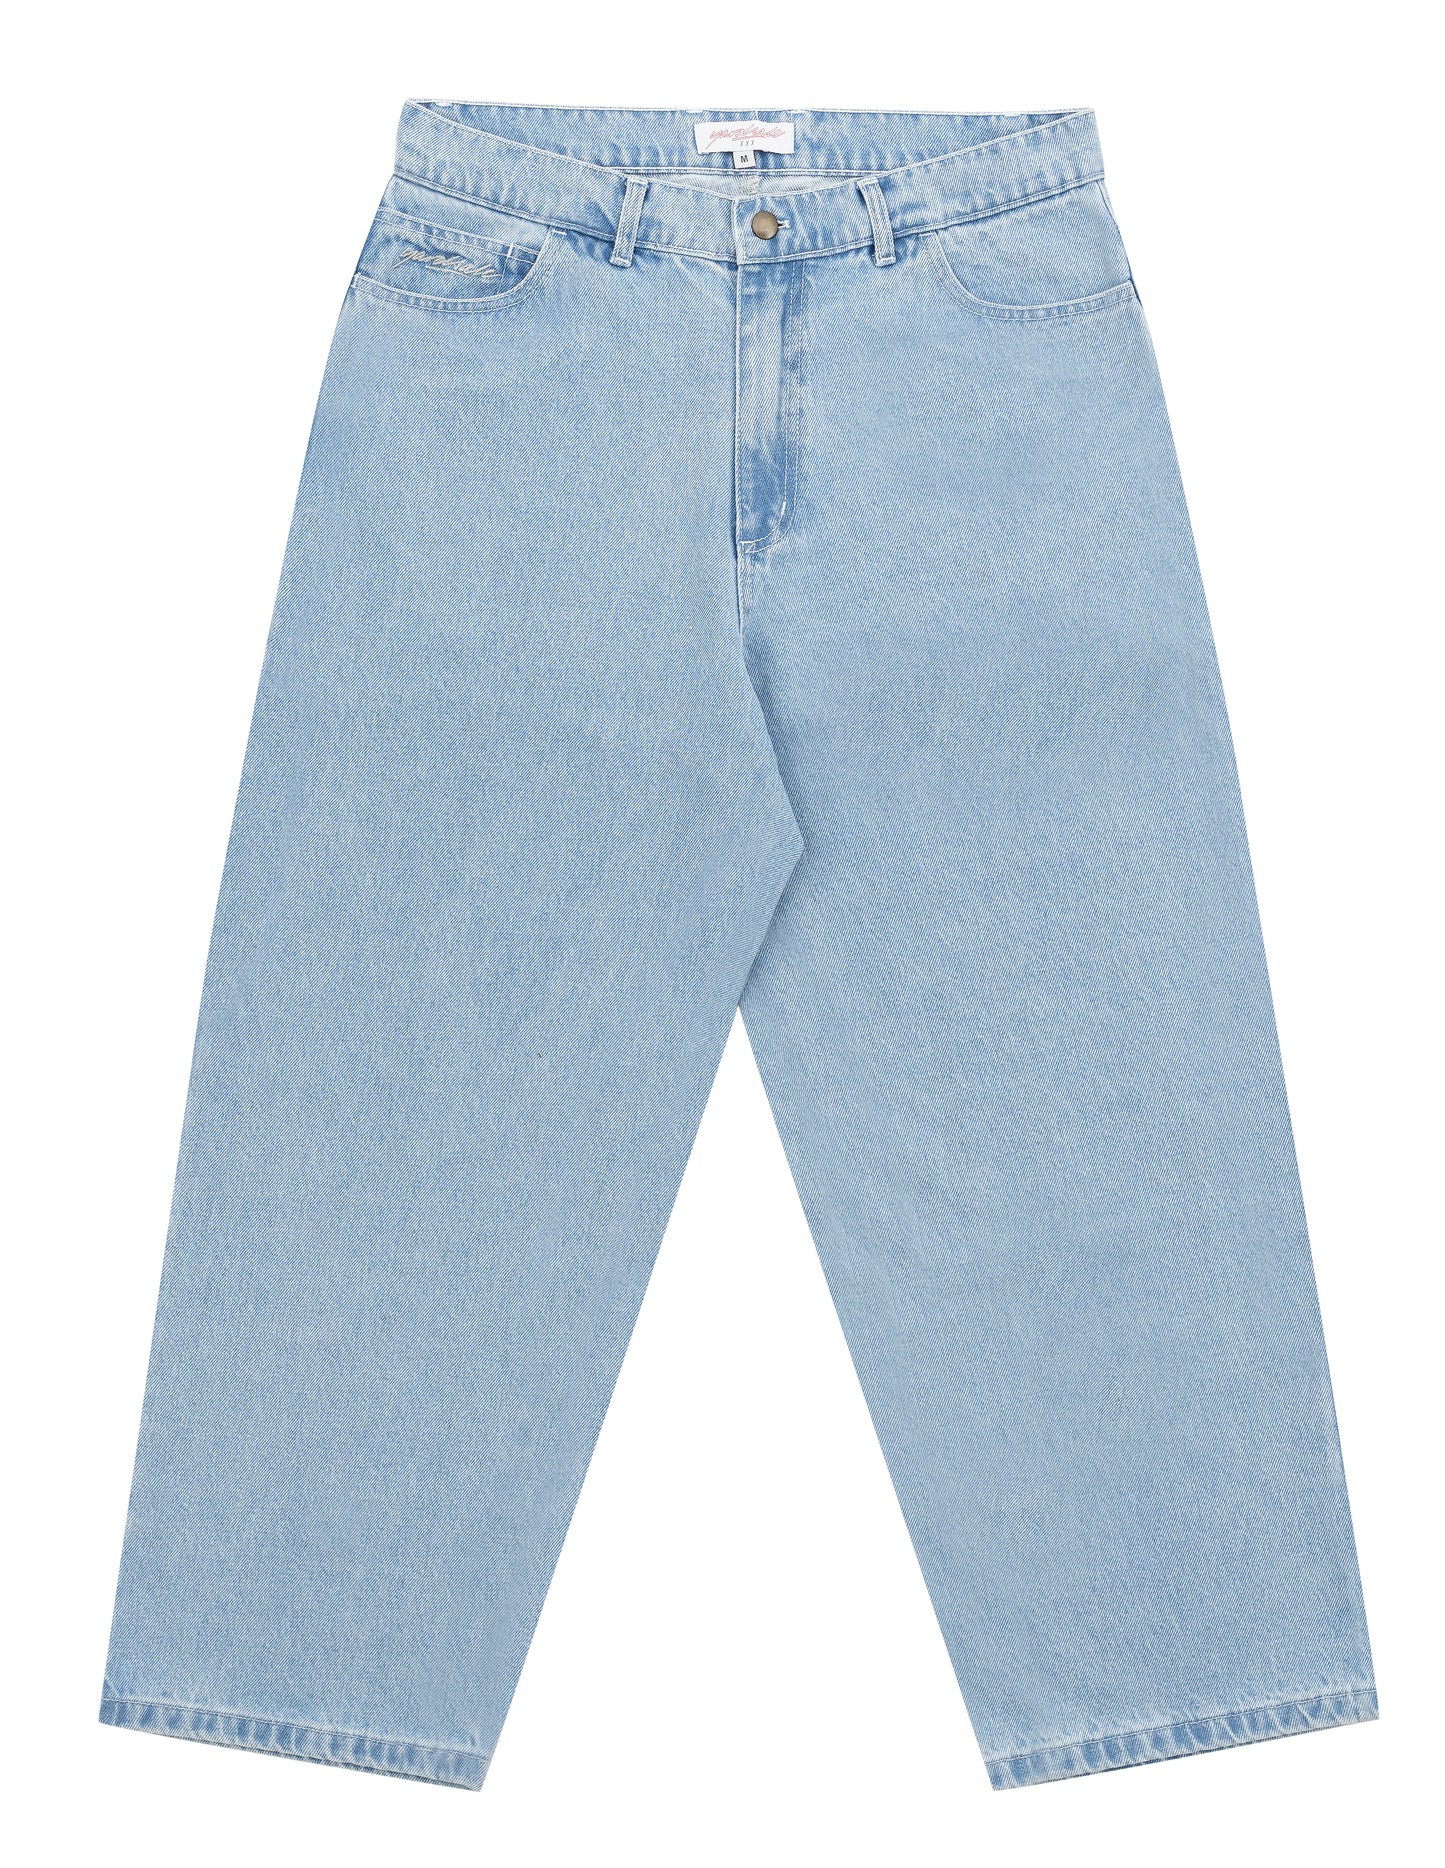 Reflective Phantasy Jeans (Light Denim) – Yardsale XXX EU